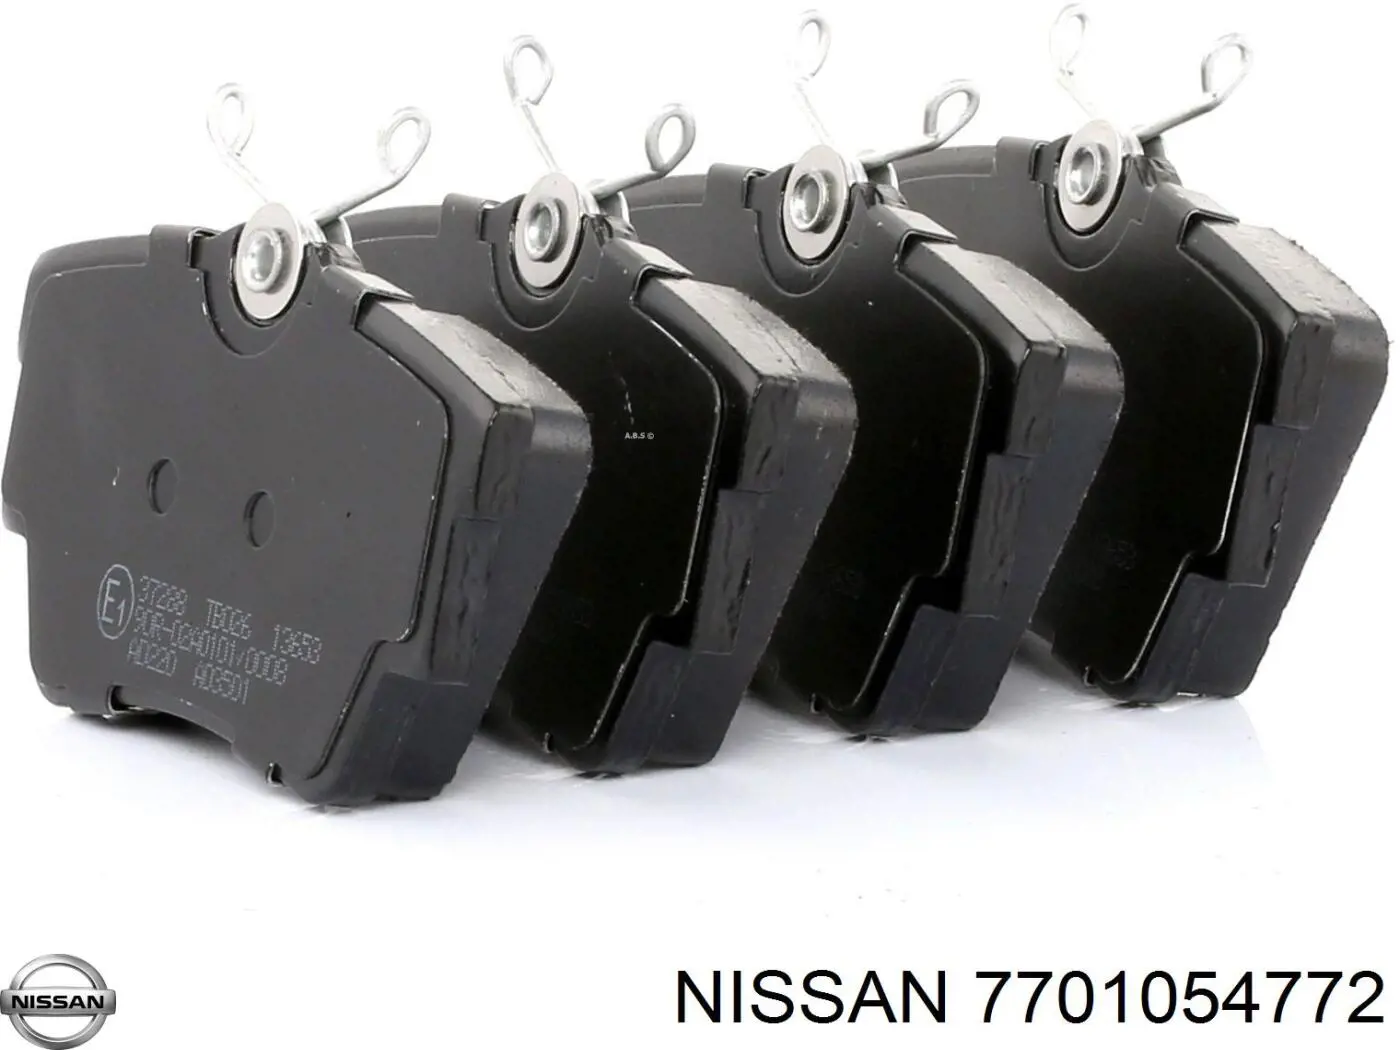 7701054772 Nissan pastillas de freno traseras